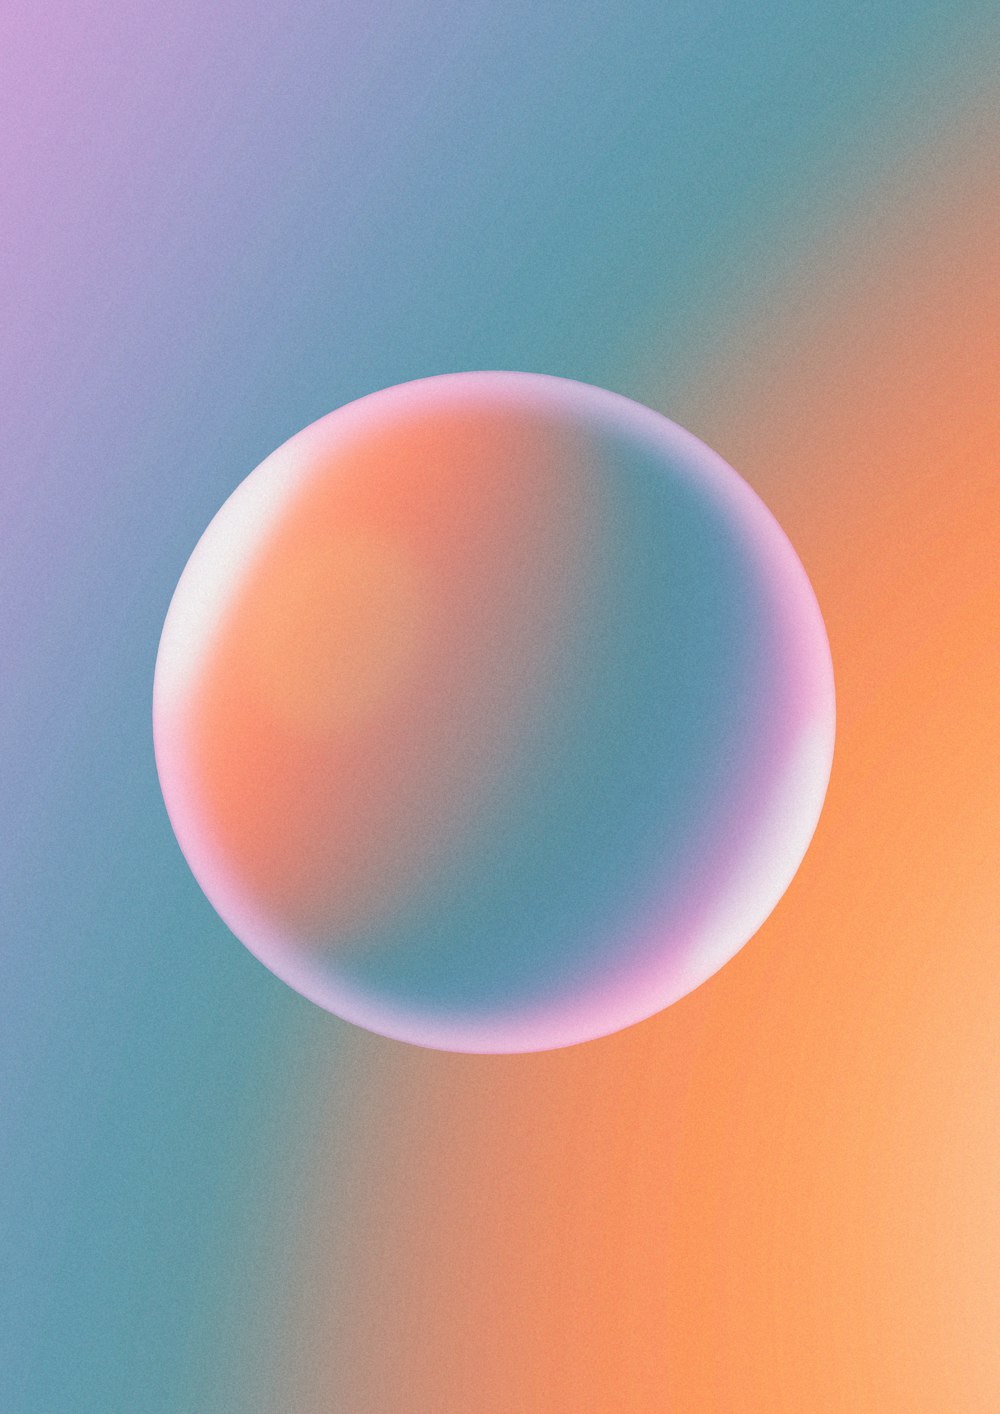 um fundo azul e rosa com um objeto circular no meio